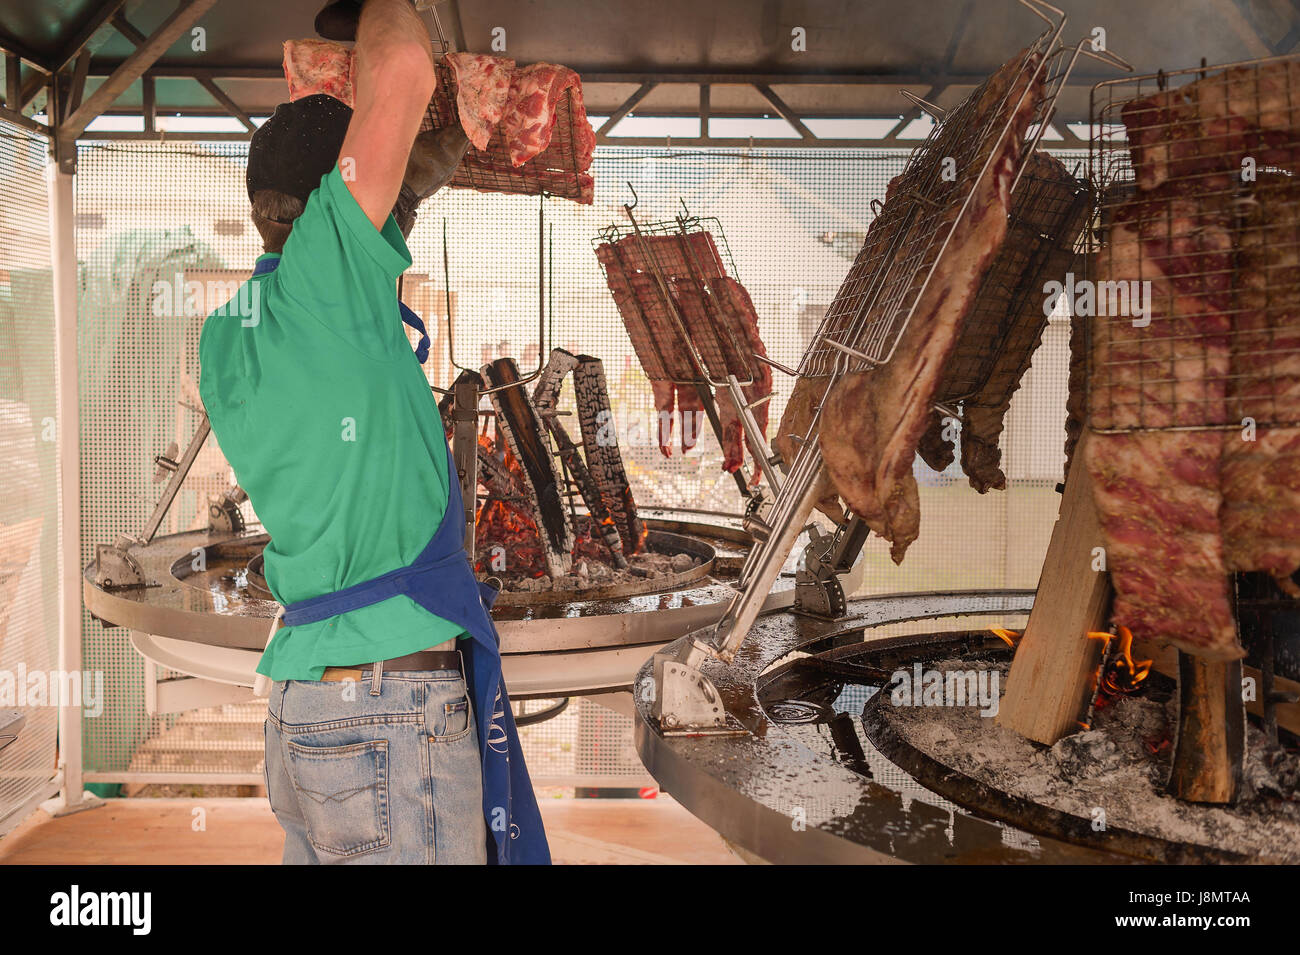 Cuisinier prépare la viande à rôtir sur le gril. Asado argentin. Banque D'Images